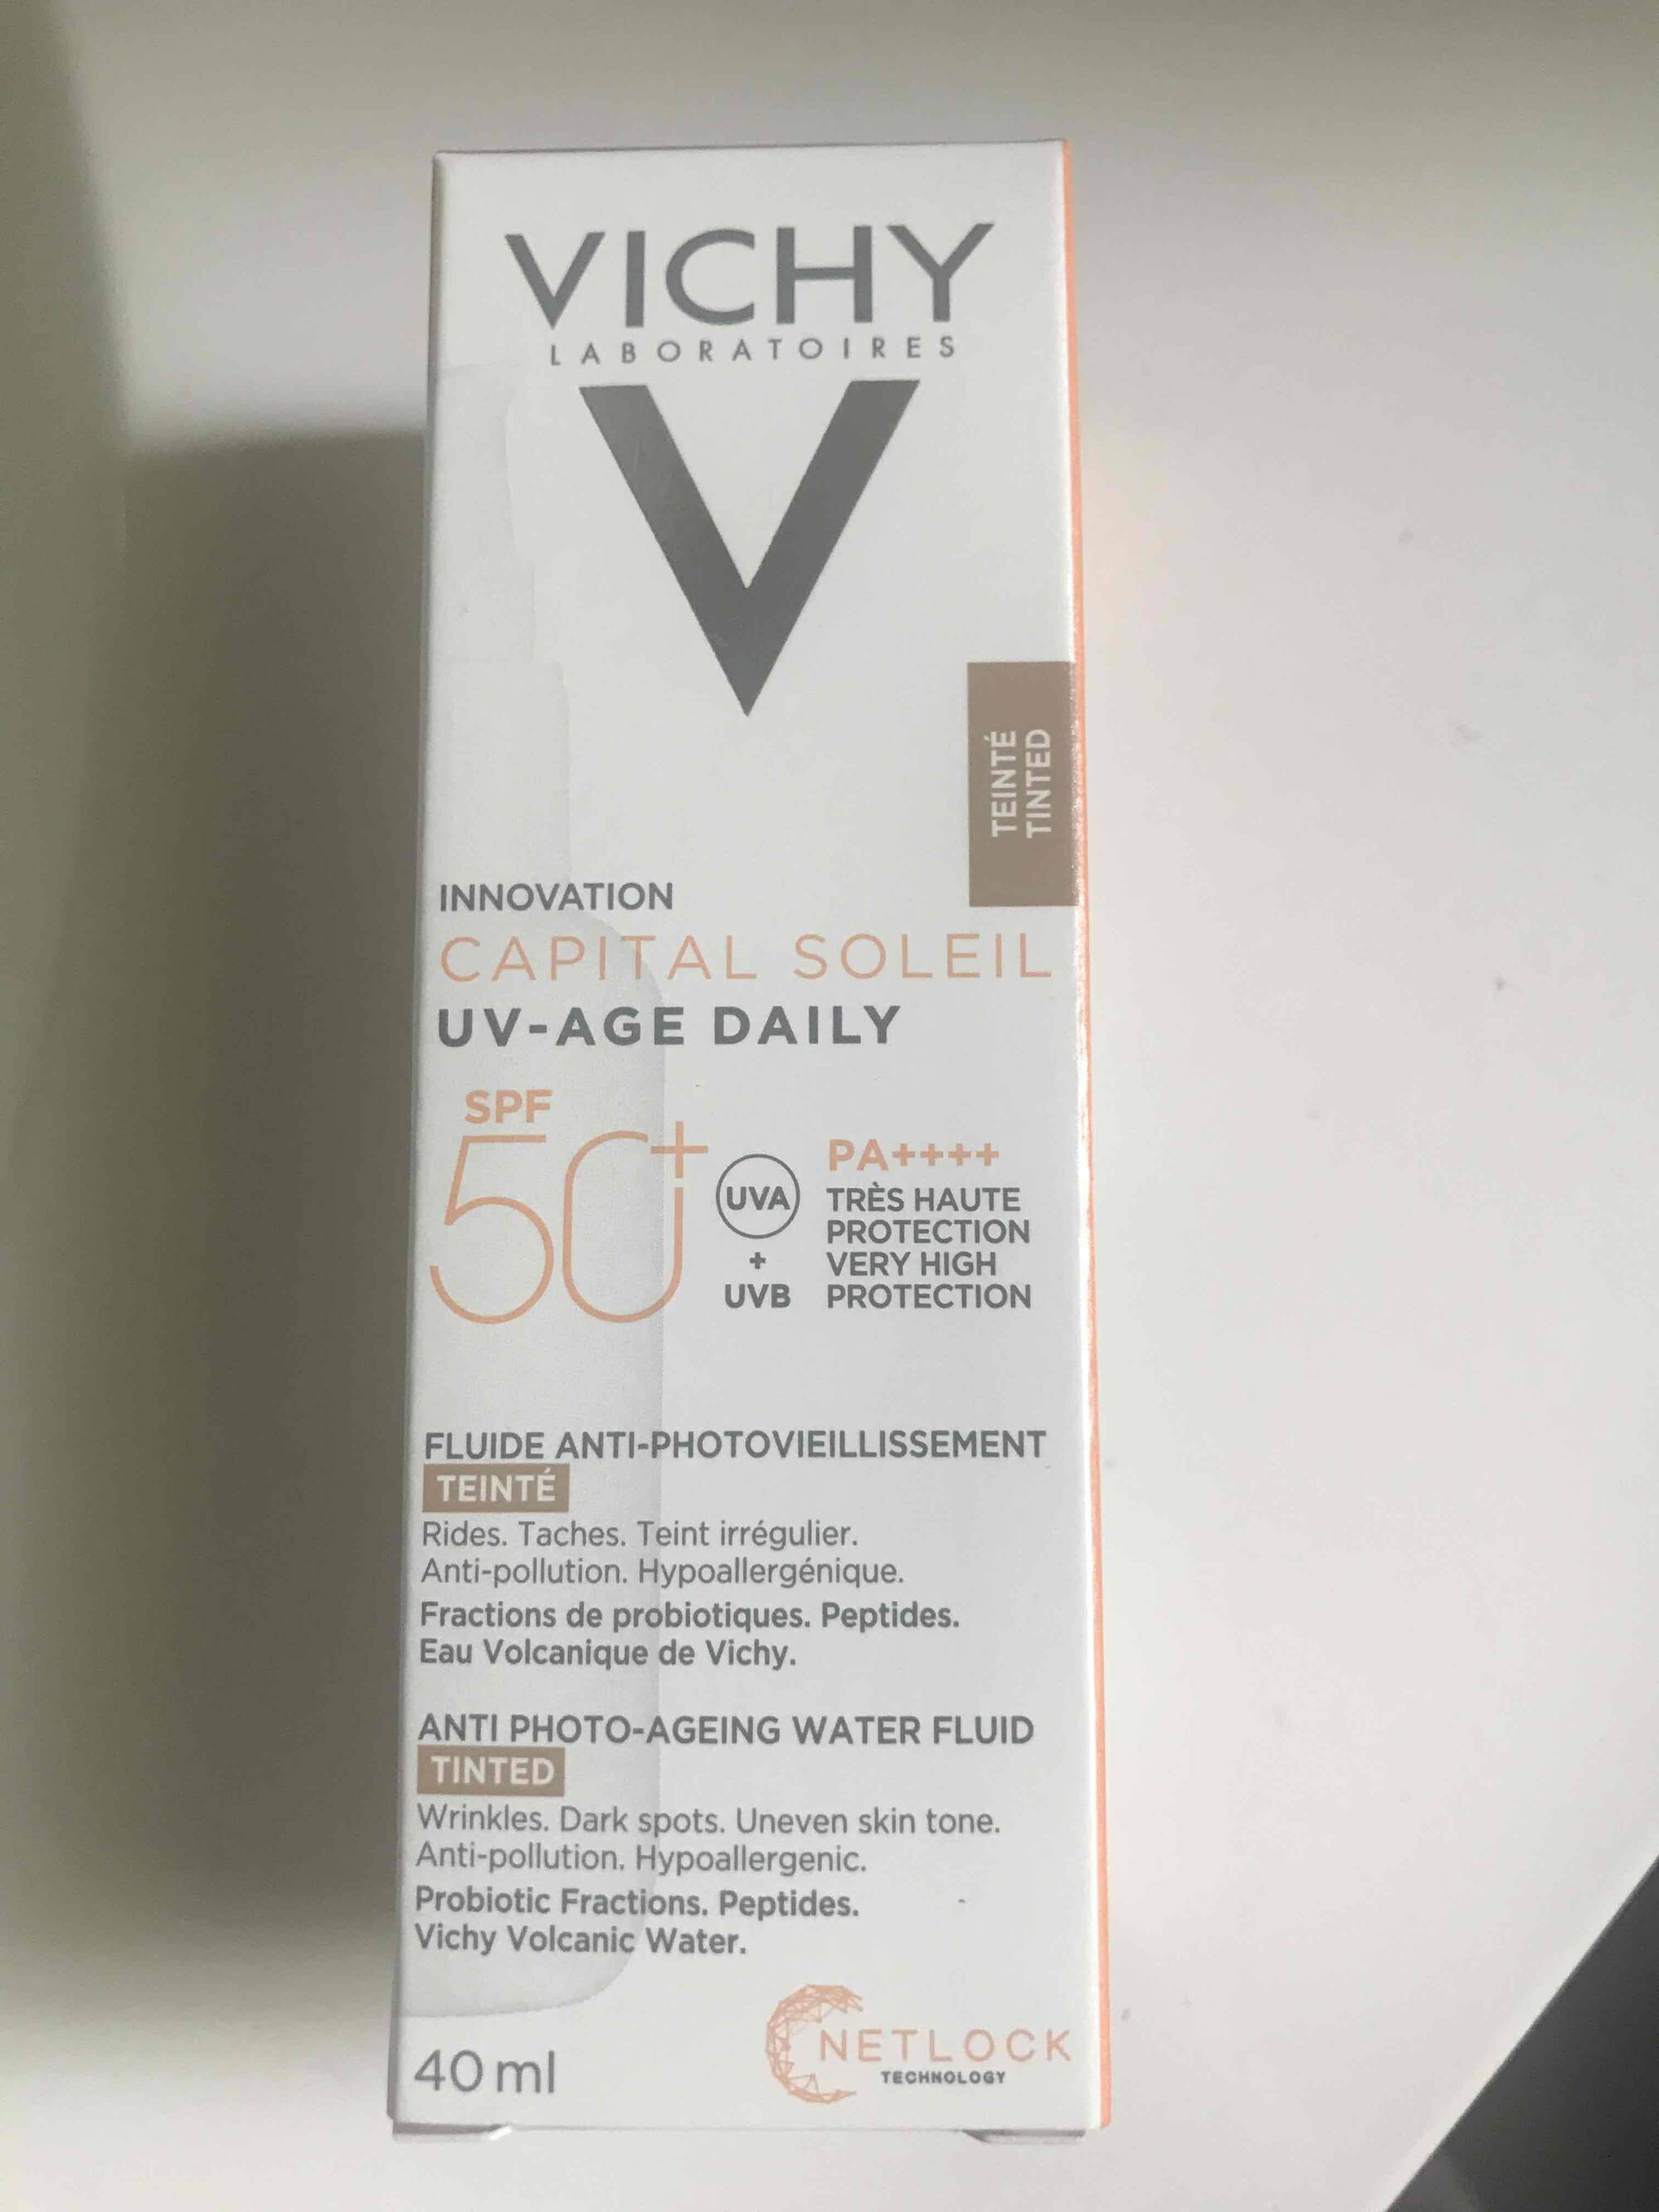 VICHY - Capital soleil - Fluide anti-photovieilissement SPF 50+